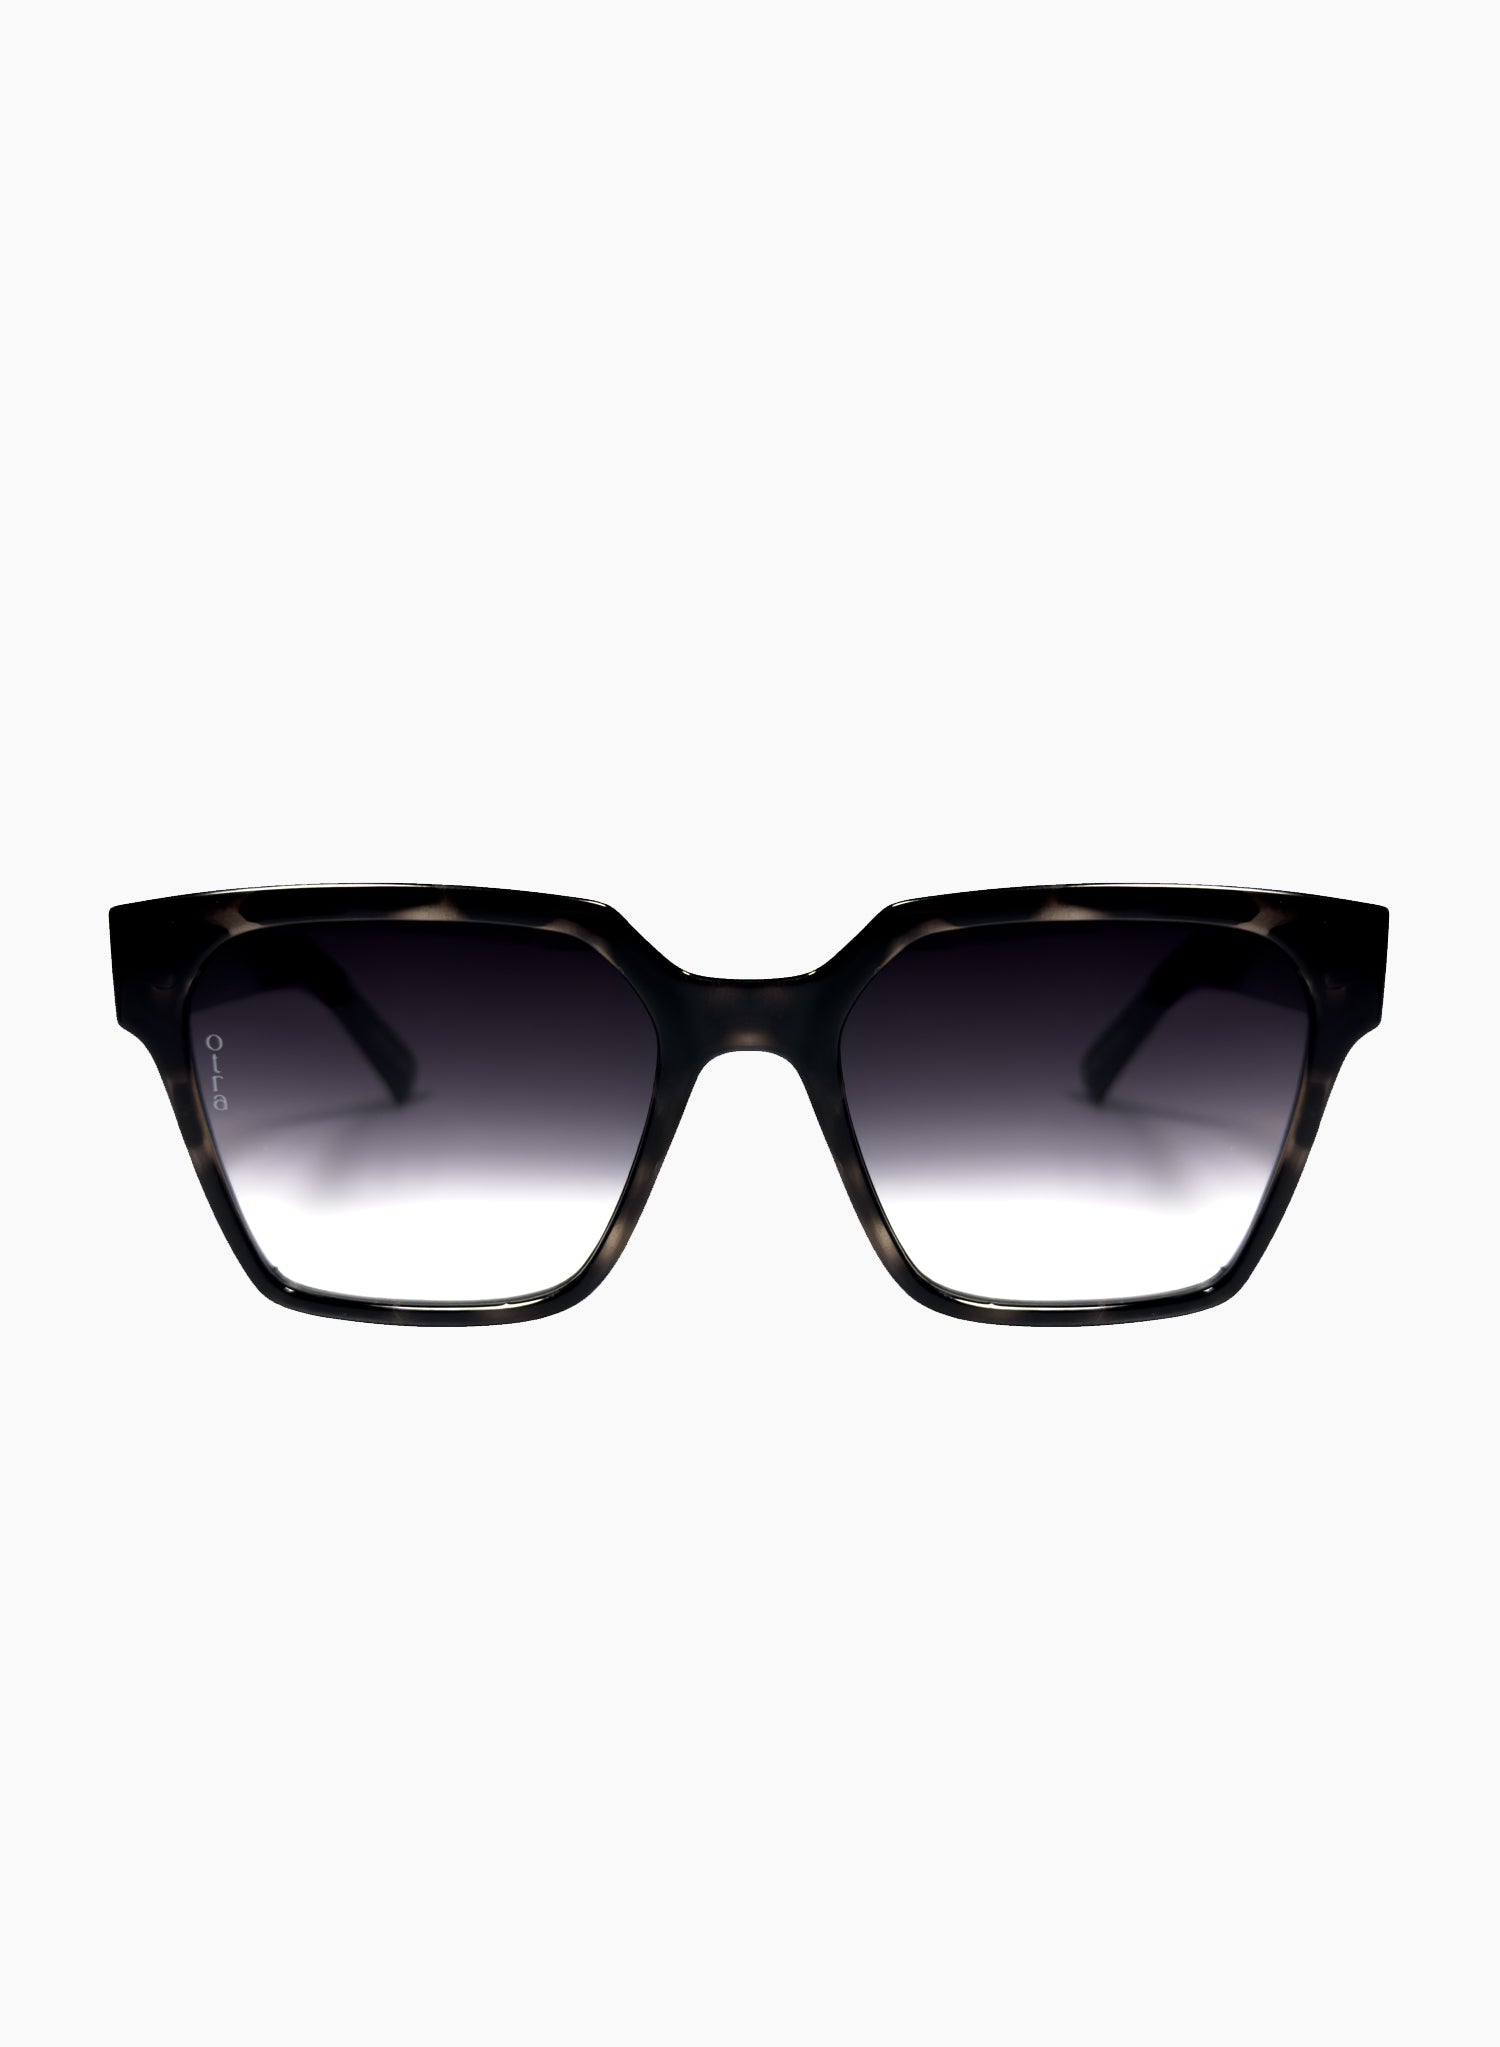 Zamora angled square sunglasses in black tortoiseshell